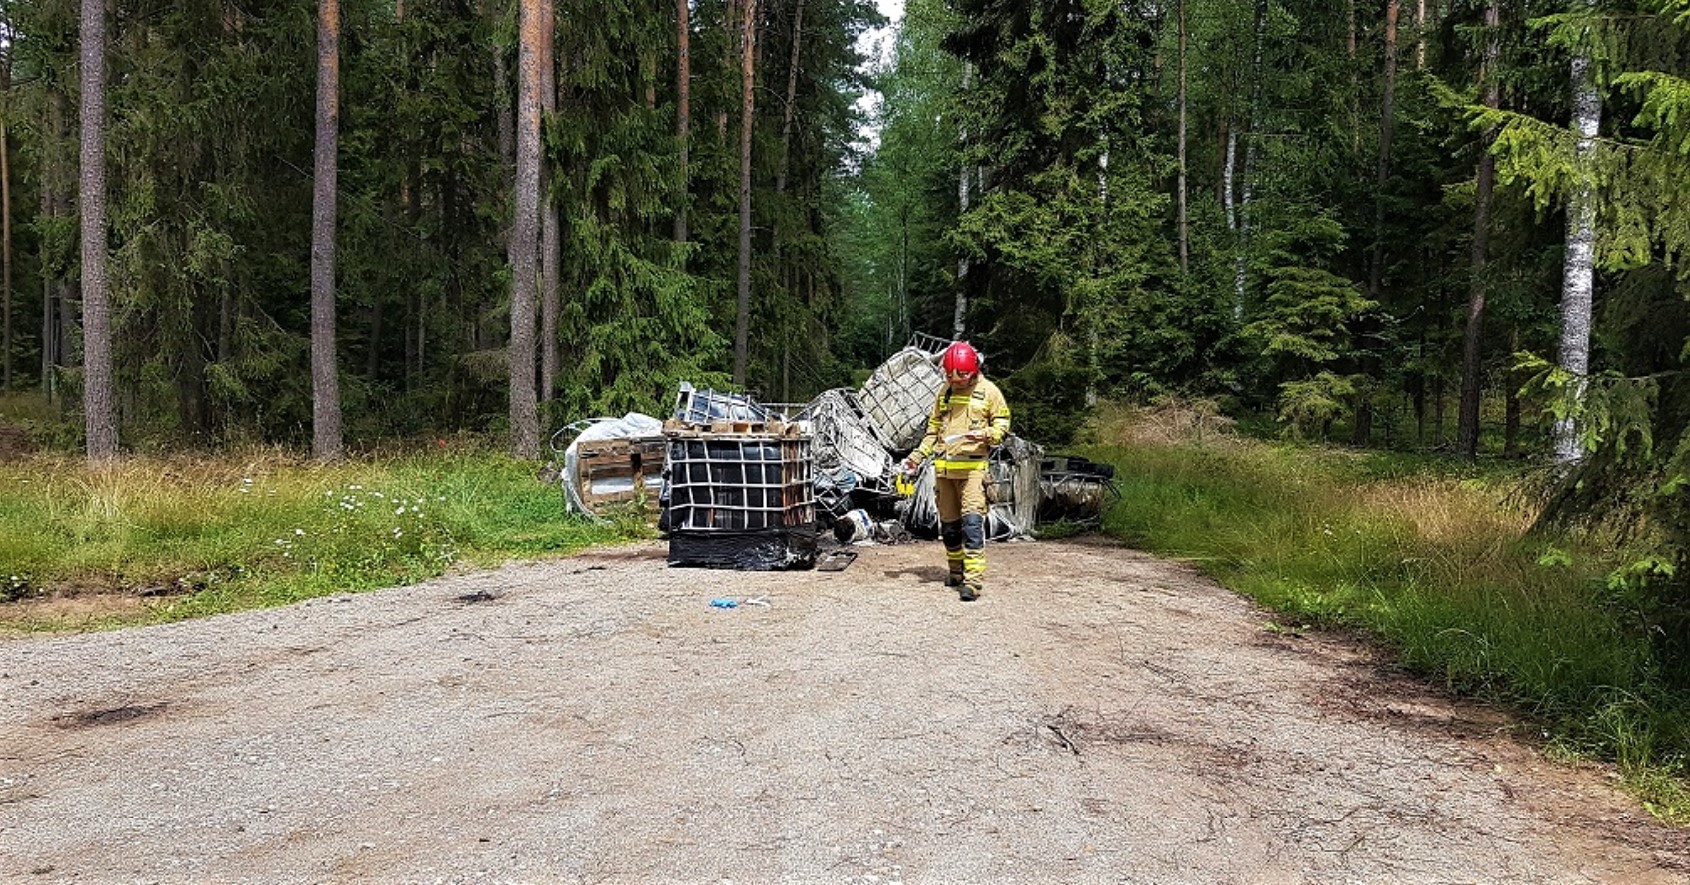 130 tysięcy złotych za utylizację nielegalnych śmieci. Czy w lasach jest potrzebny monitoring?